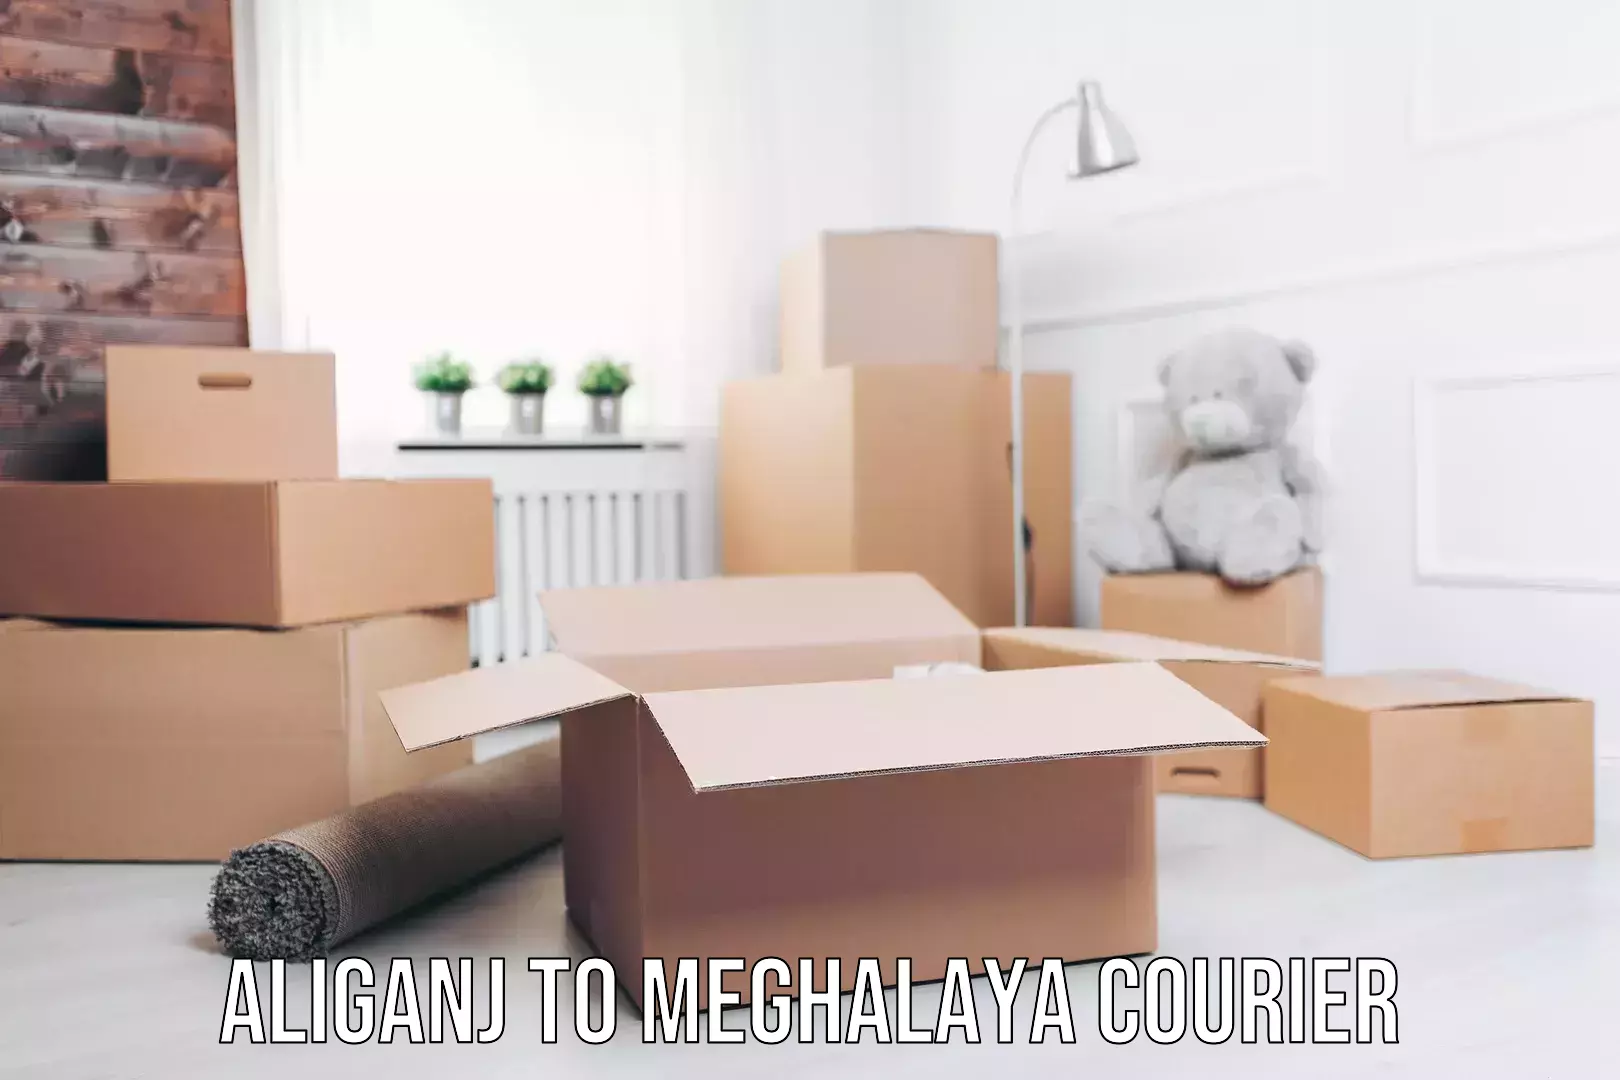 Express courier facilities Aliganj to Meghalaya